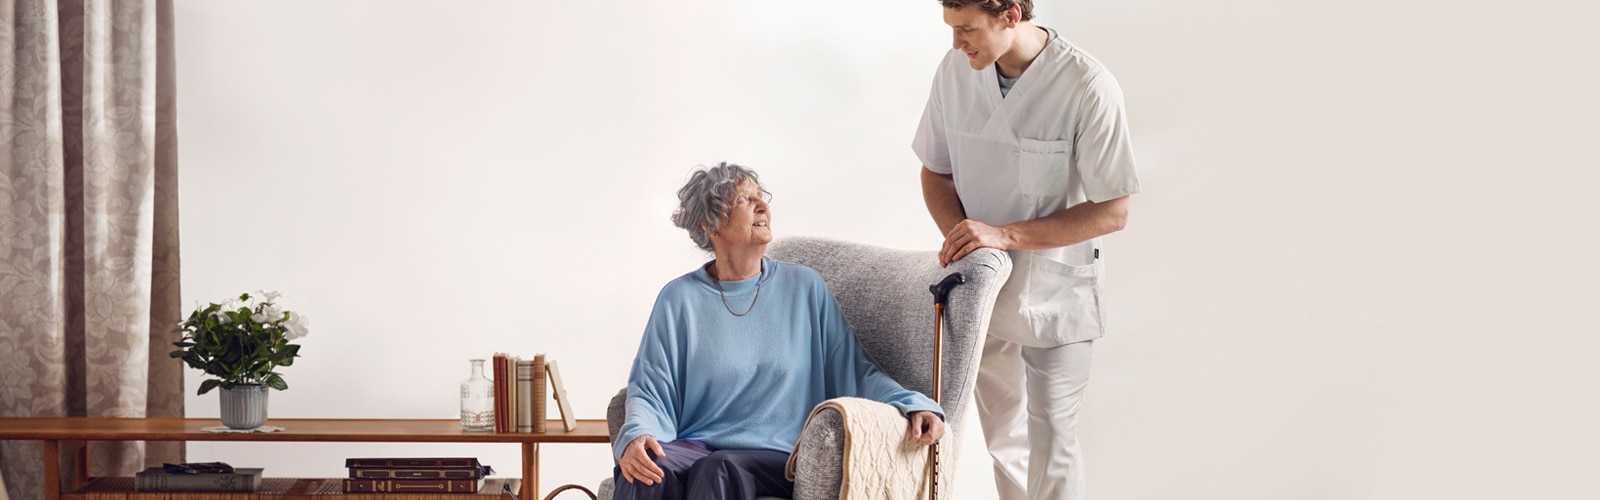 Rozhovor sedícího staršího klienta se stojícím profesionálním pečovatelem v prostředí domova pro seniory 